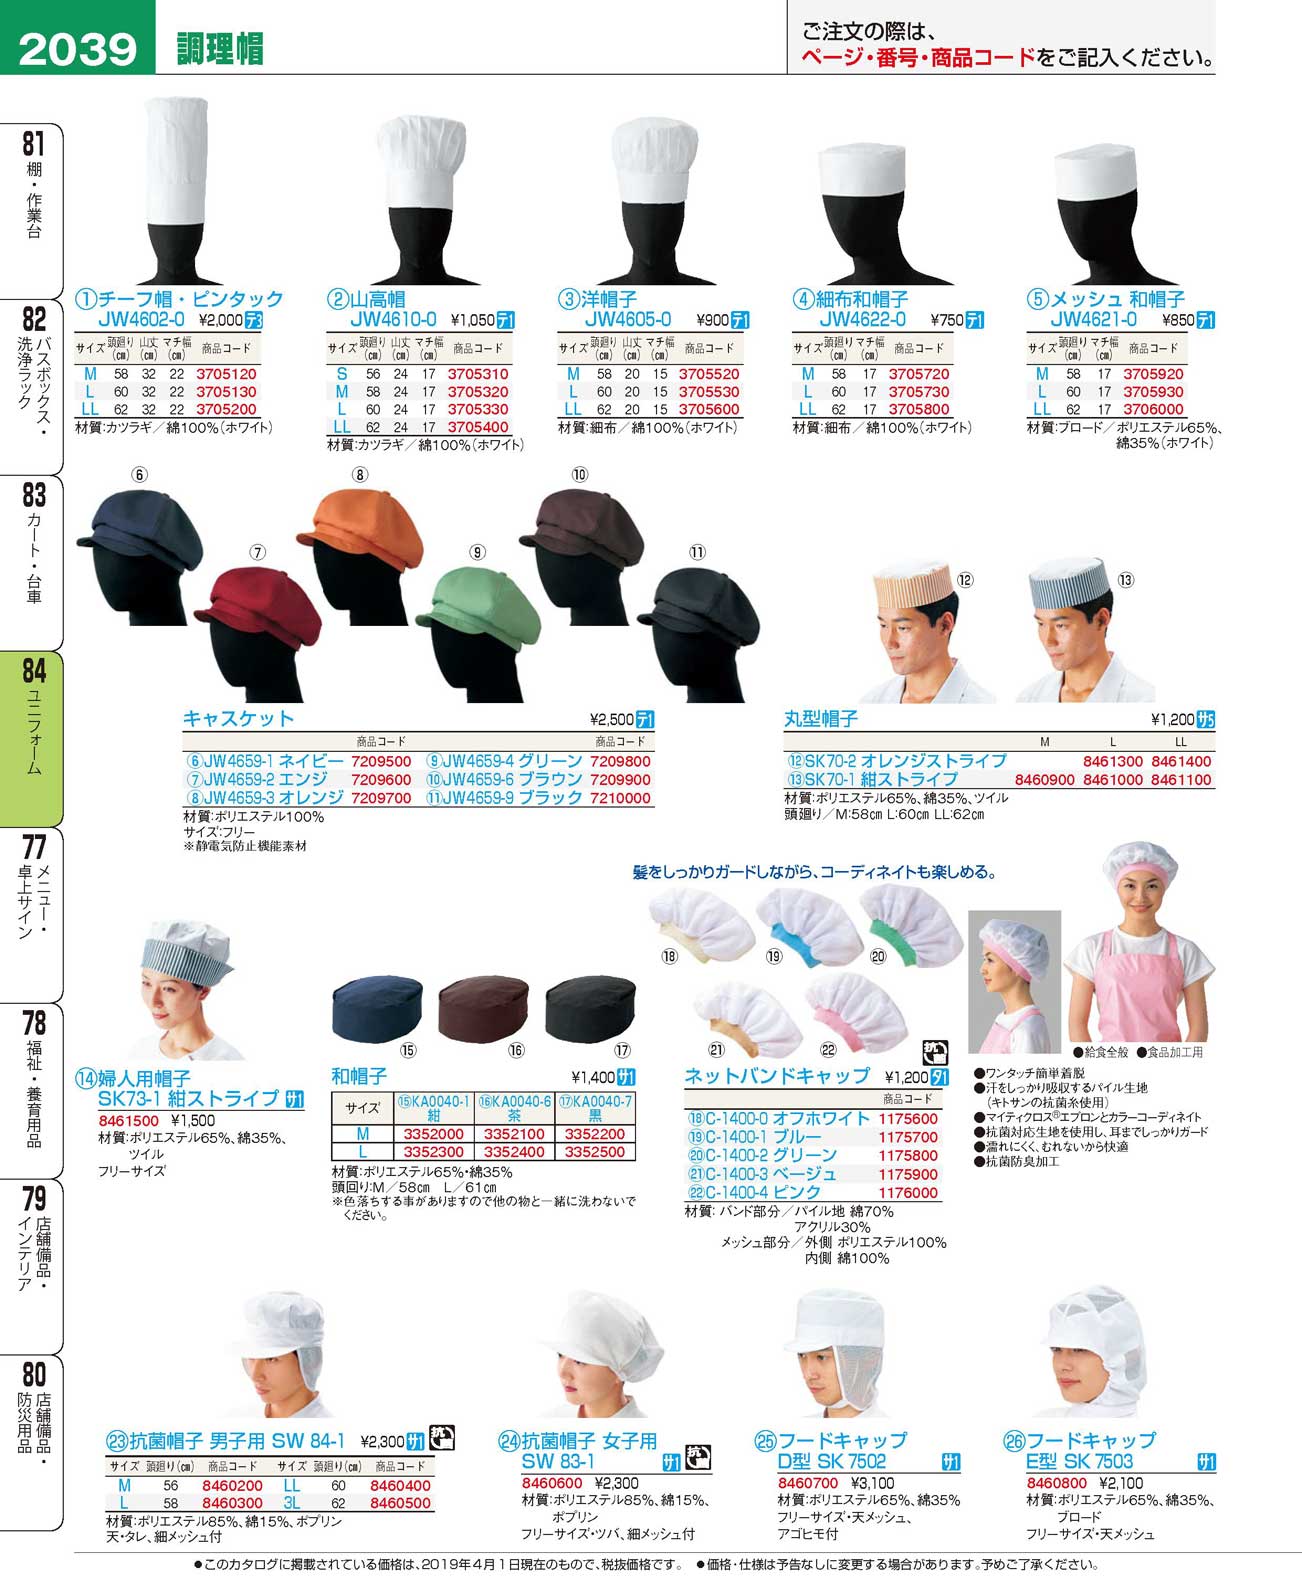 食器 調理帽Uniform, Cap for Kitchen プロフェッショナルベストコレクション１９ ＥＢＭ－2039ページ